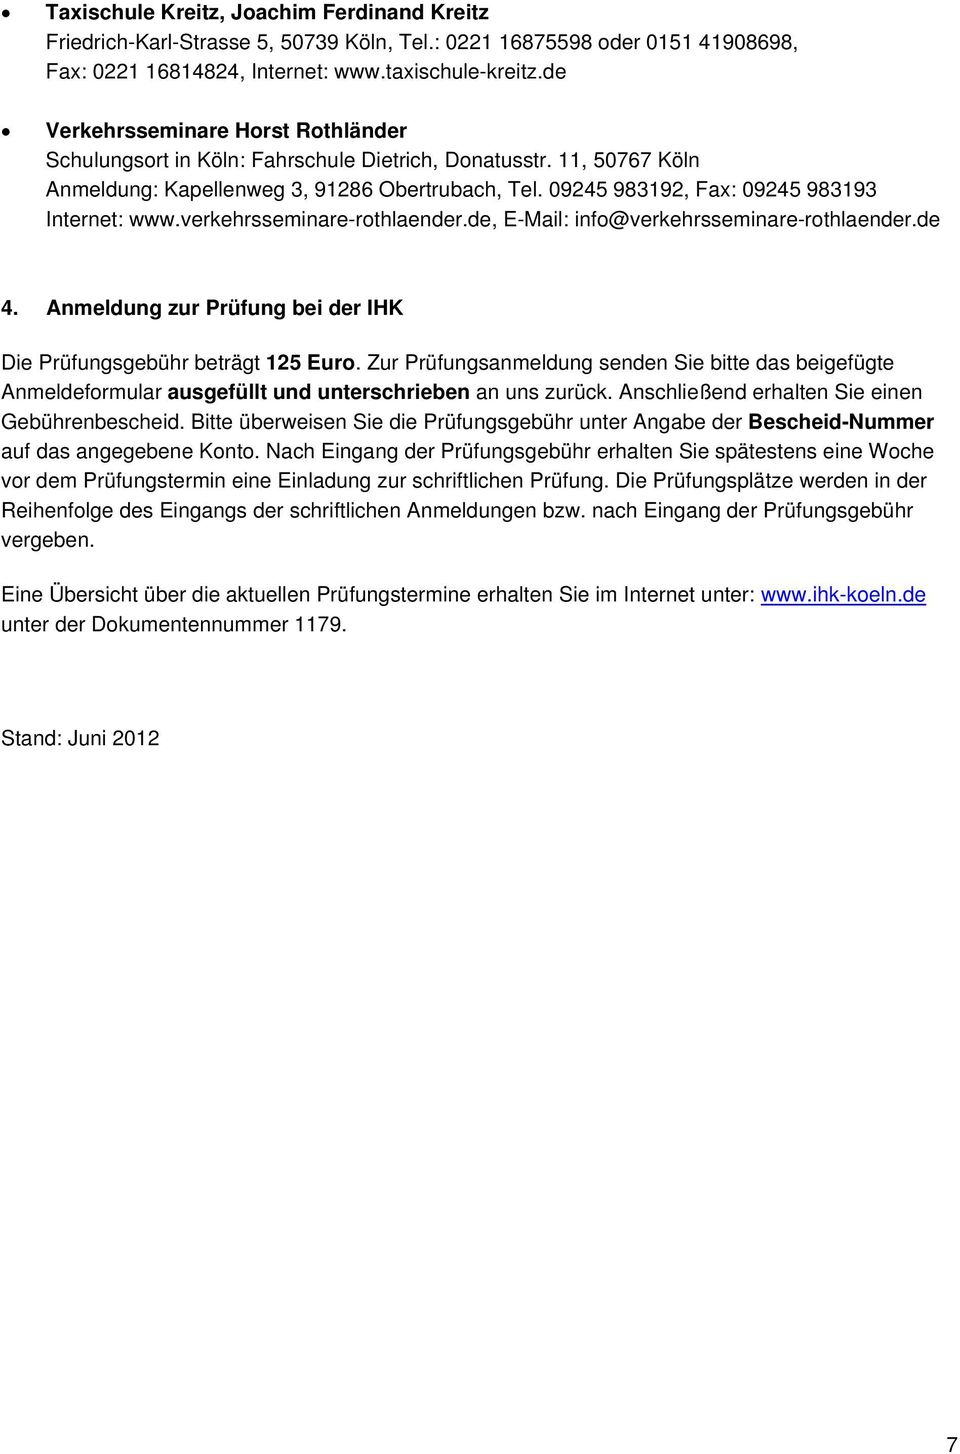 09245 983192, Fax: 09245 983193 Internet: www.verkehrsseminare-rothlaender.de, E-Mail: info@verkehrsseminare-rothlaender.de 4. Anmeldung zur Prüfung bei der IHK Die Prüfungsgebühr beträgt 125 Euro.